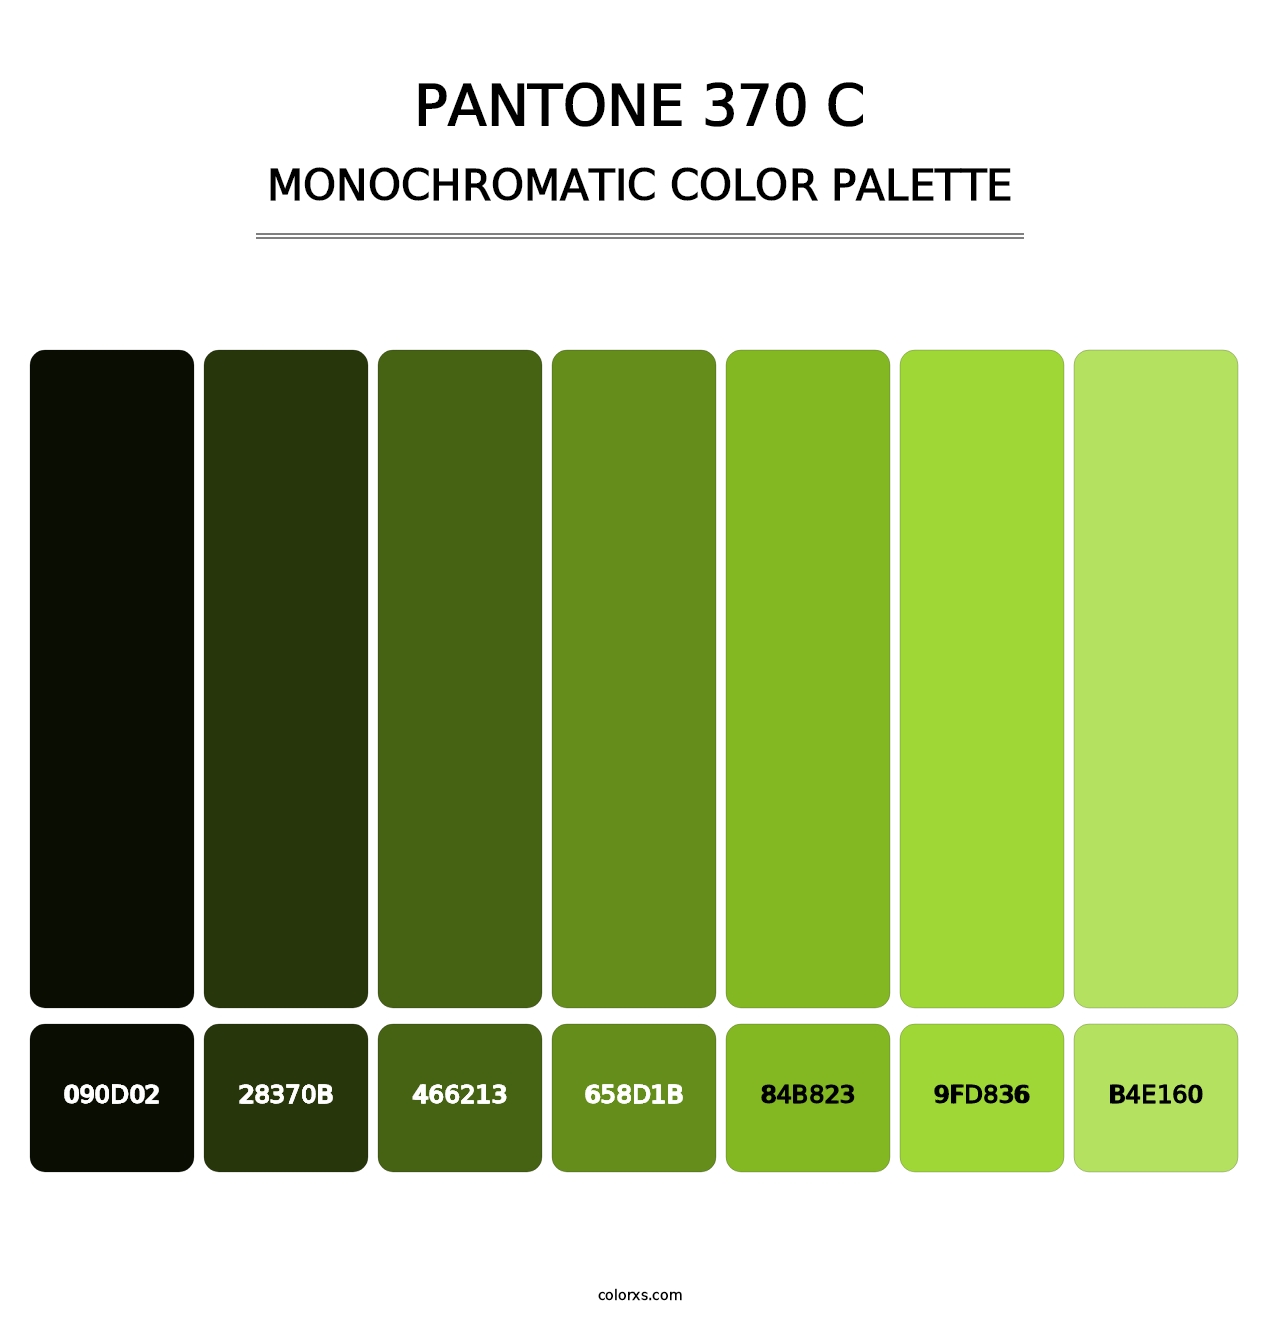 PANTONE 370 C - Monochromatic Color Palette